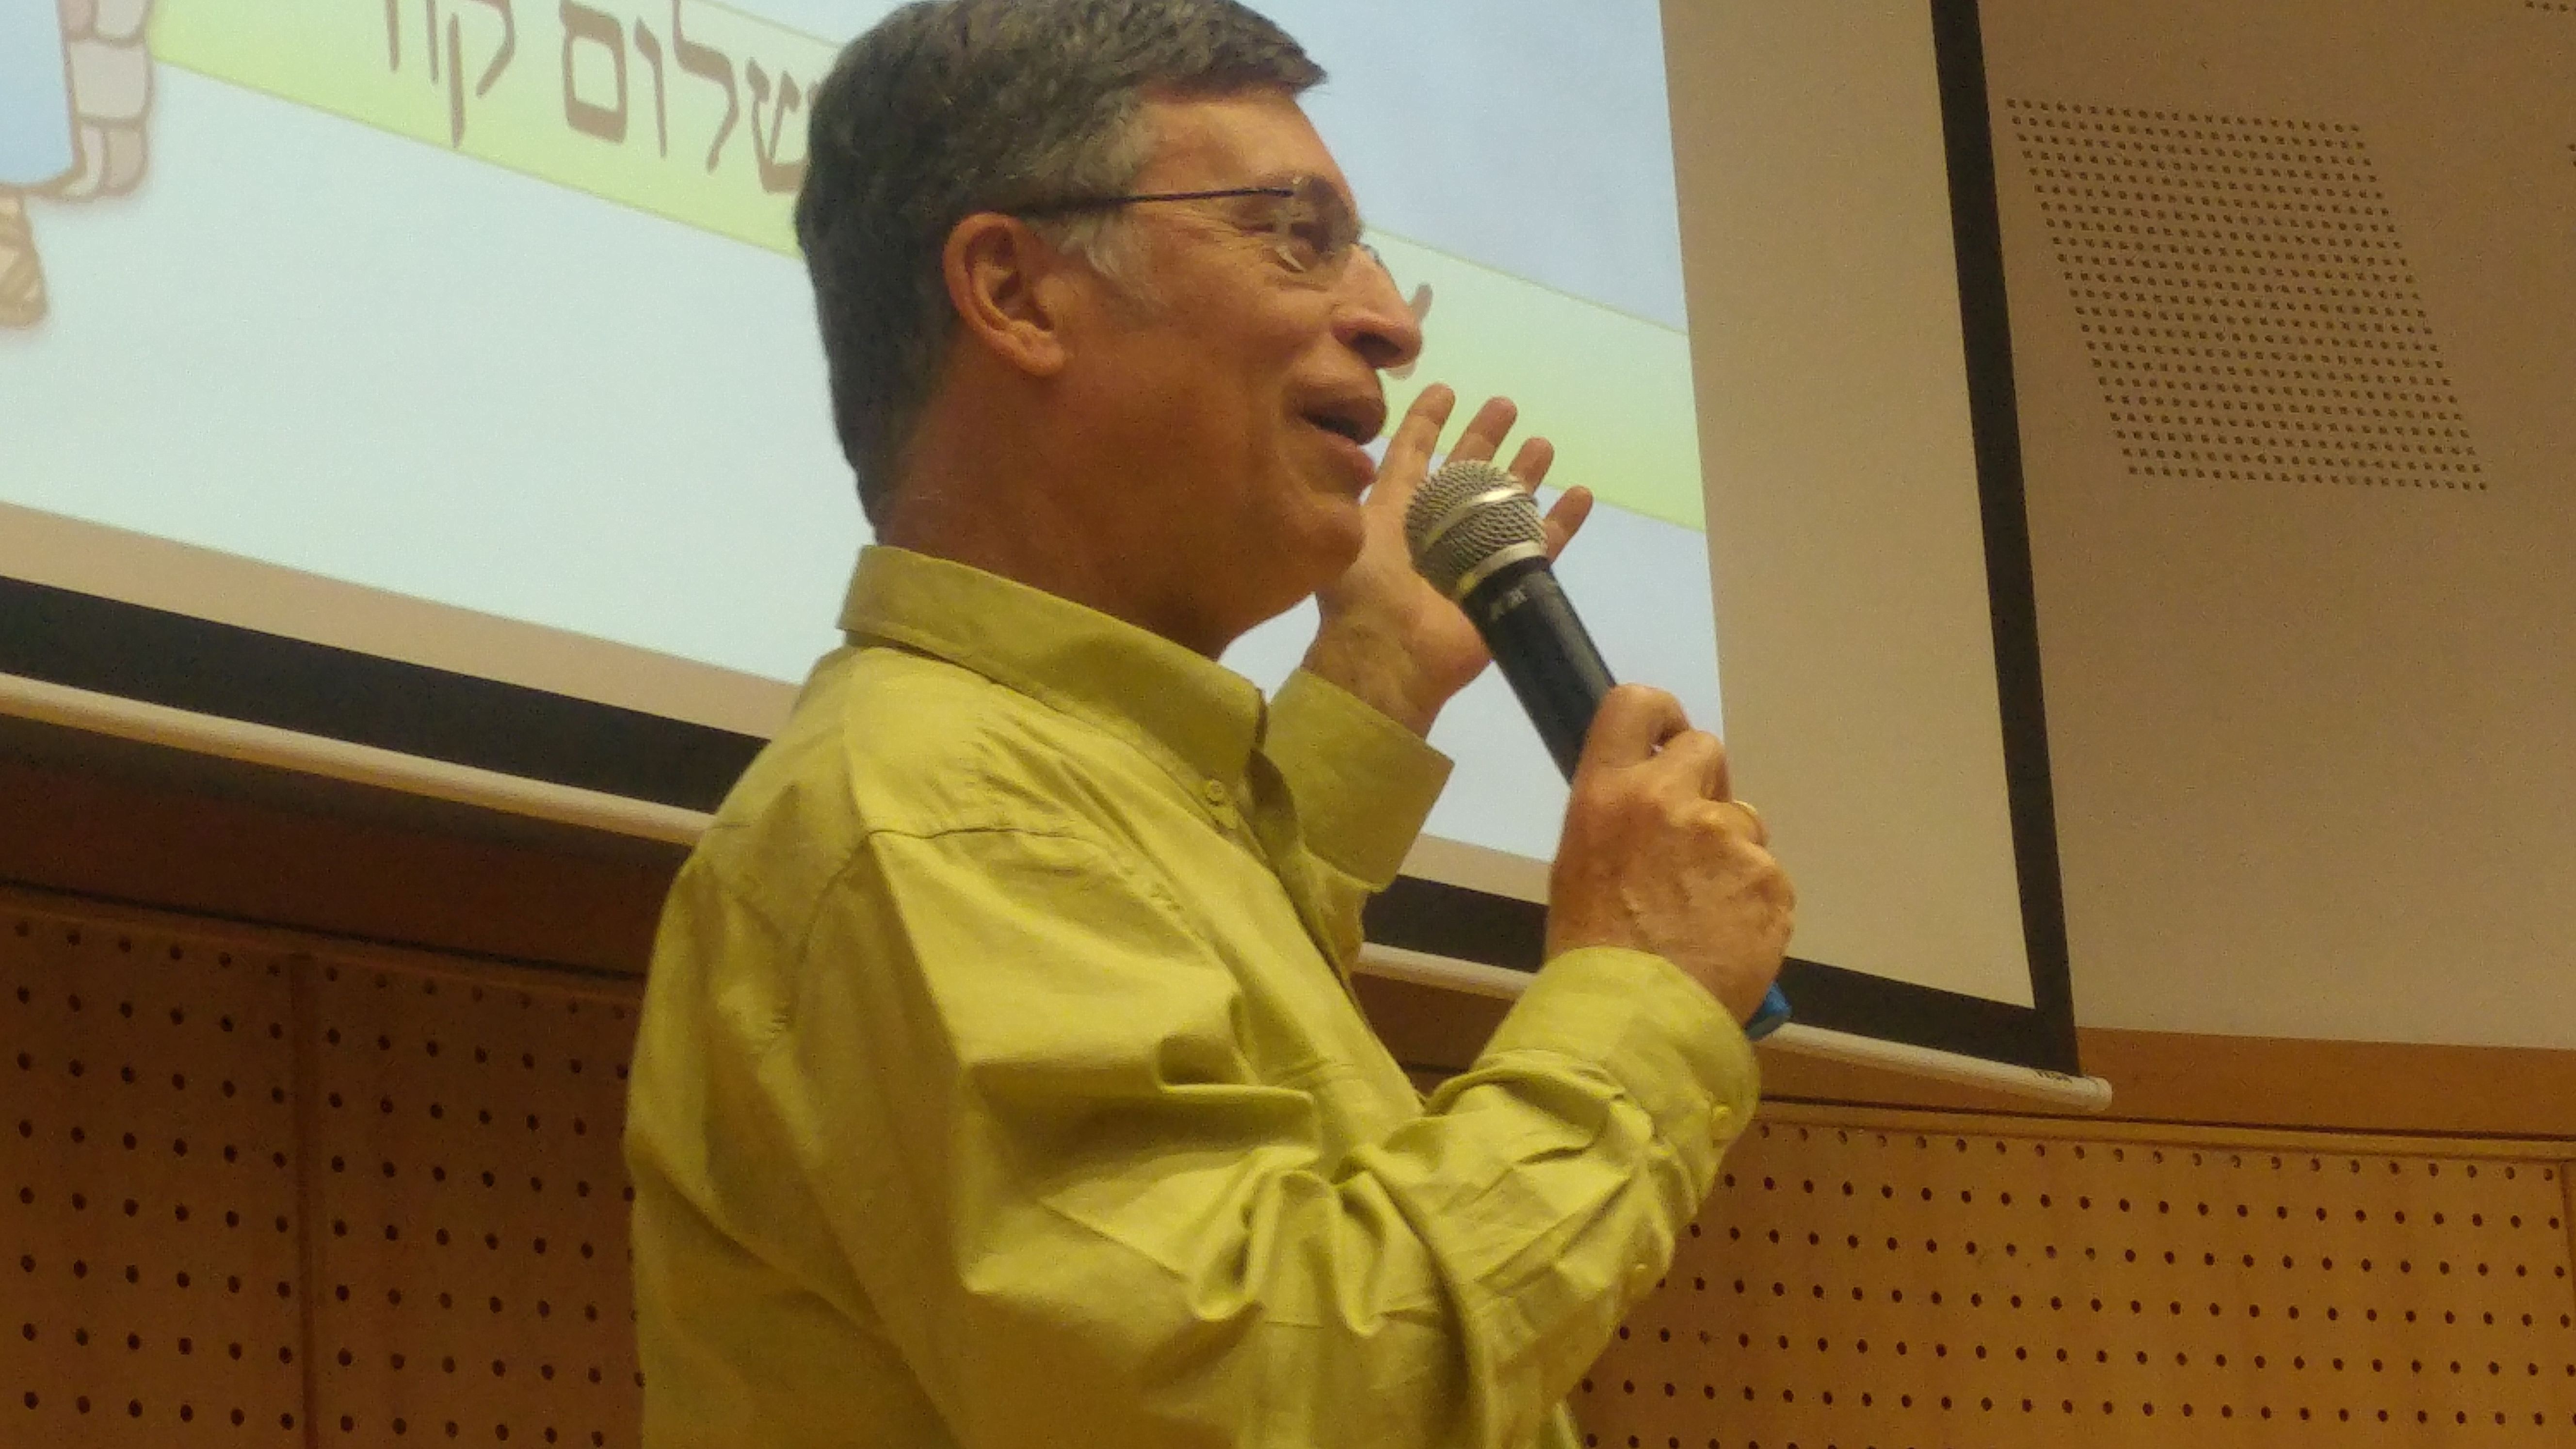 ד”ר אבשלום קור השתתף באירוע ההשקה לחוג ללשון עברית במכללה האקדמית “אוהלו”